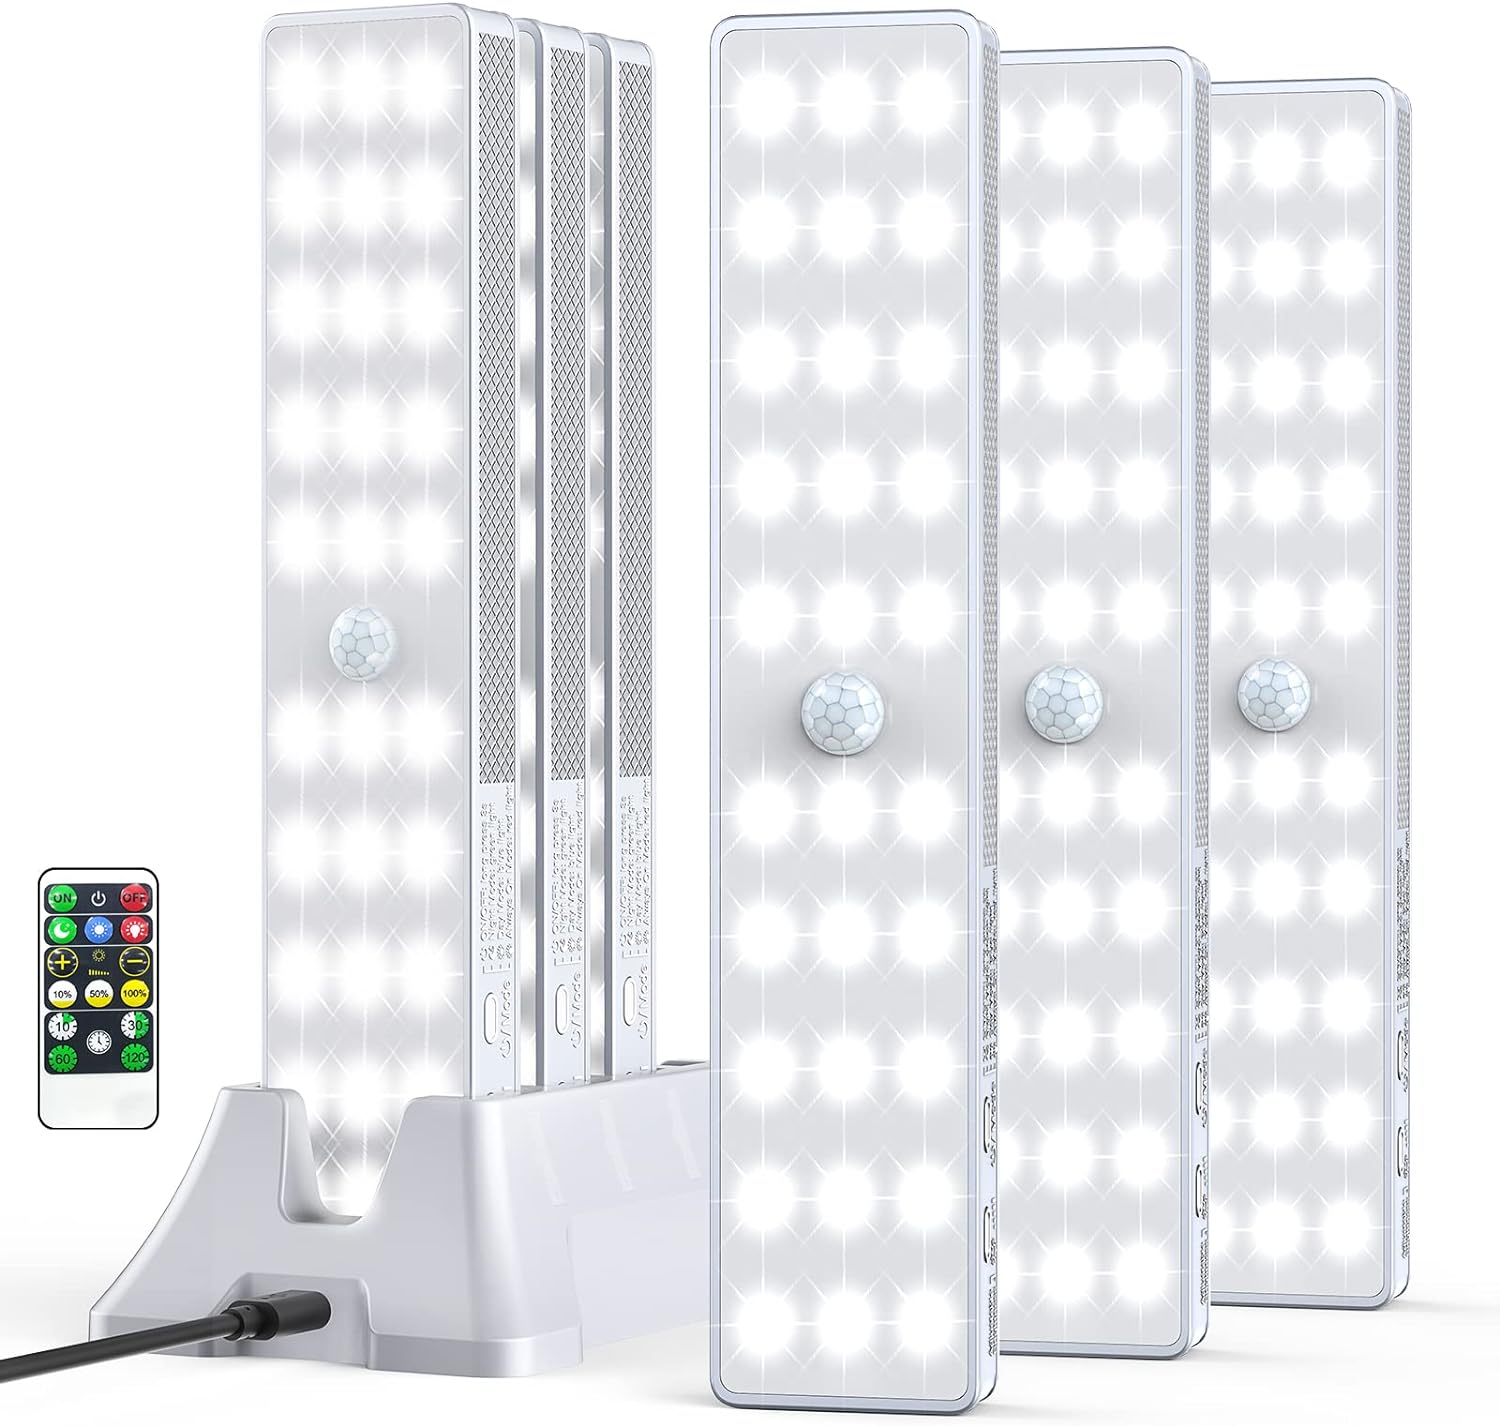 Luz LED para armario con estación de carga 30 LED regulador de